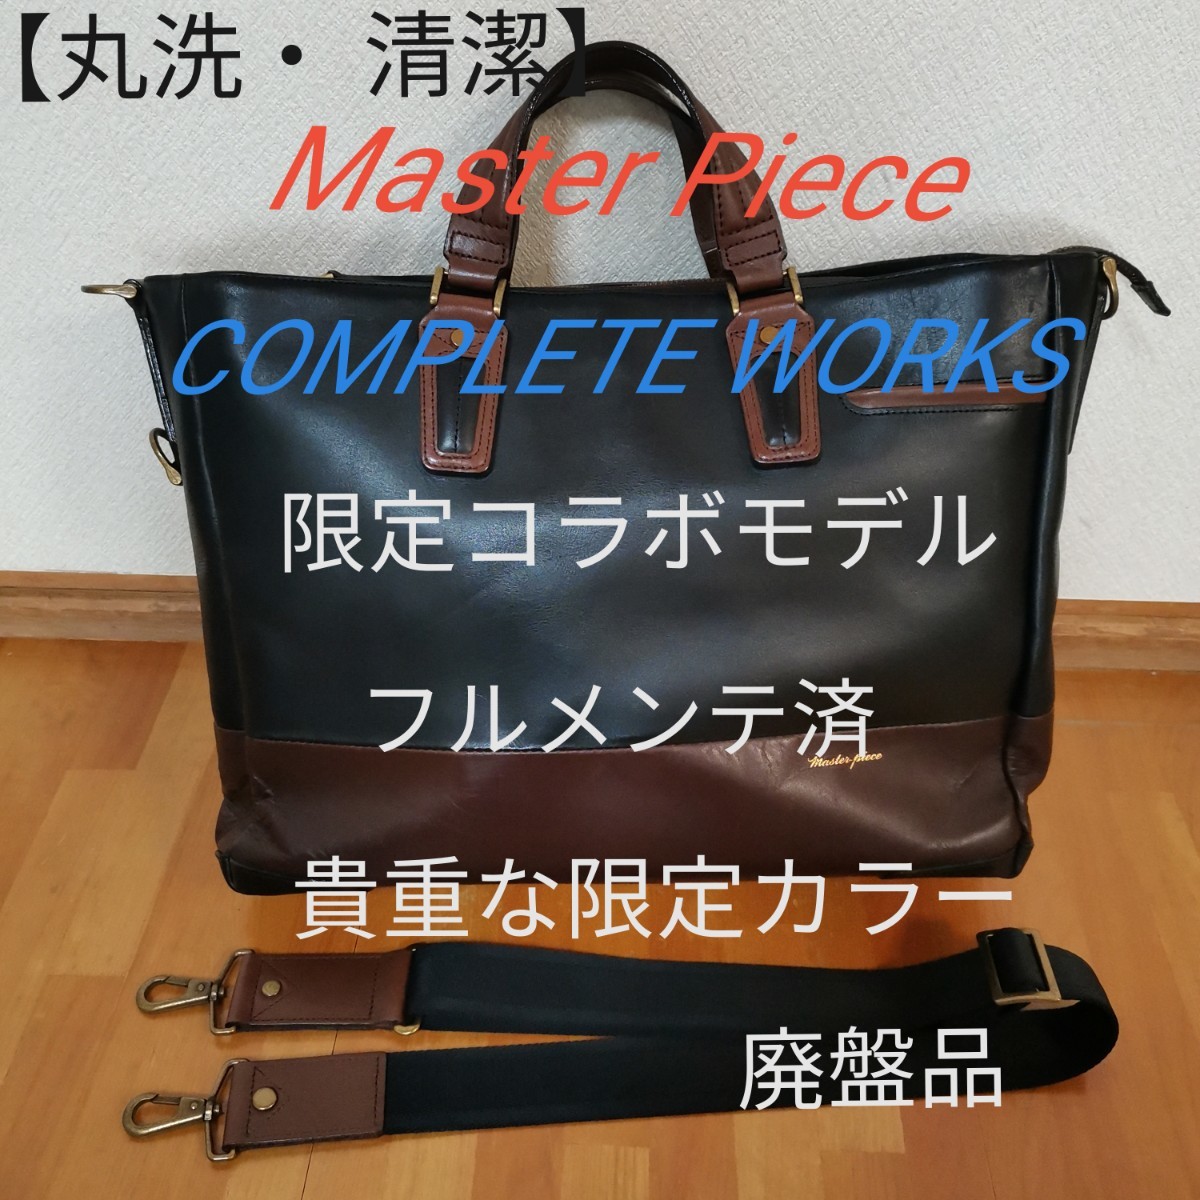 【丸洗・フルメンテ済】Master Piece COMPLETE WORKS 廃盤品 超希少 レア